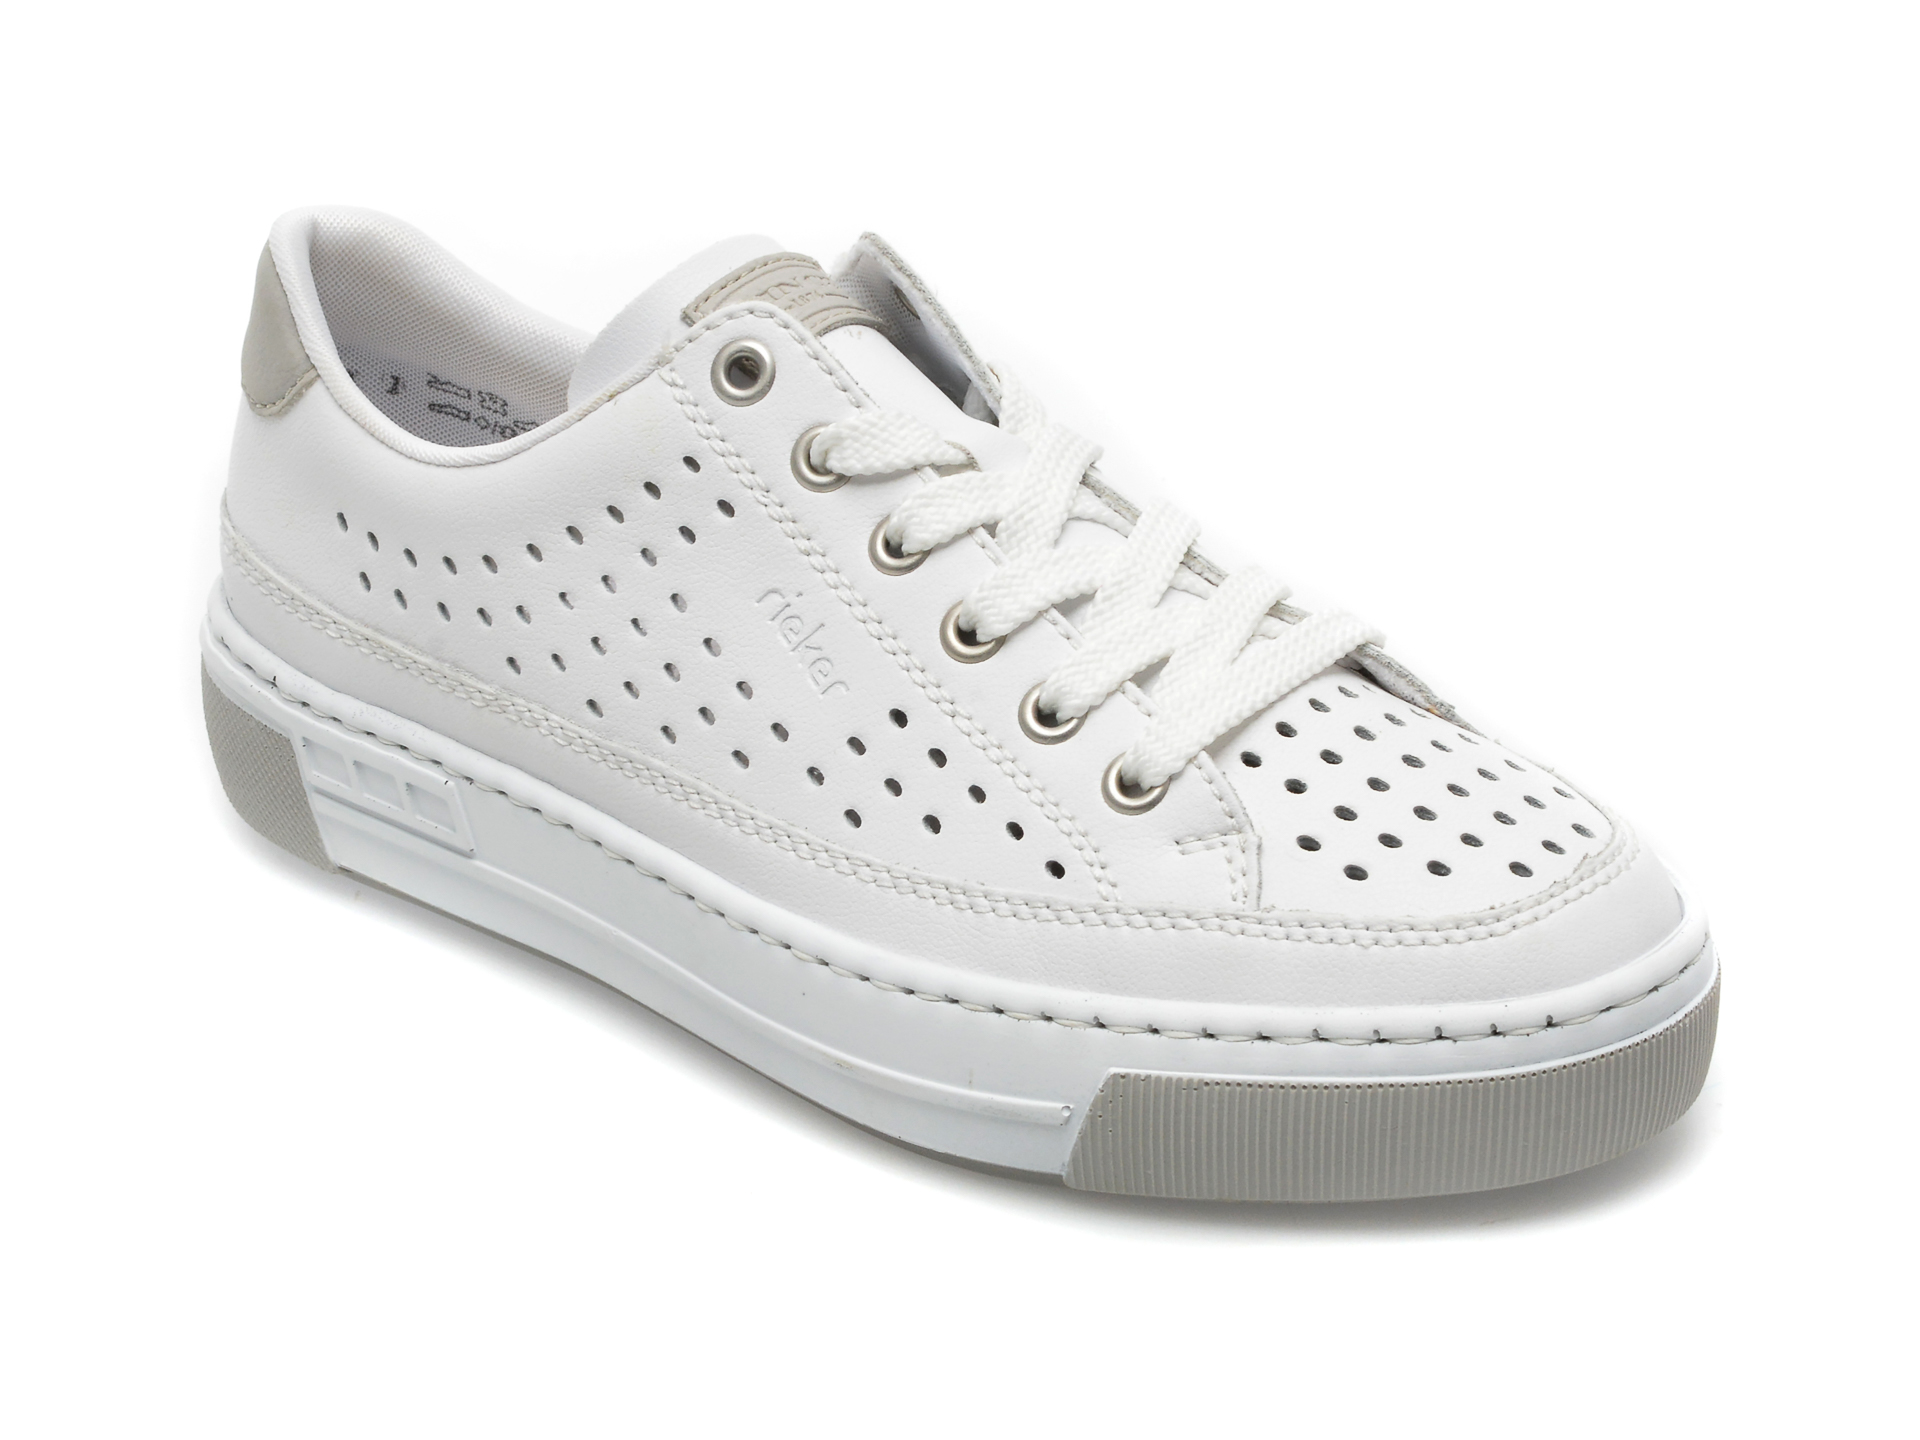 Pantofi RIEKER albi, L8849, din piele ecologica femei 2023-03-21